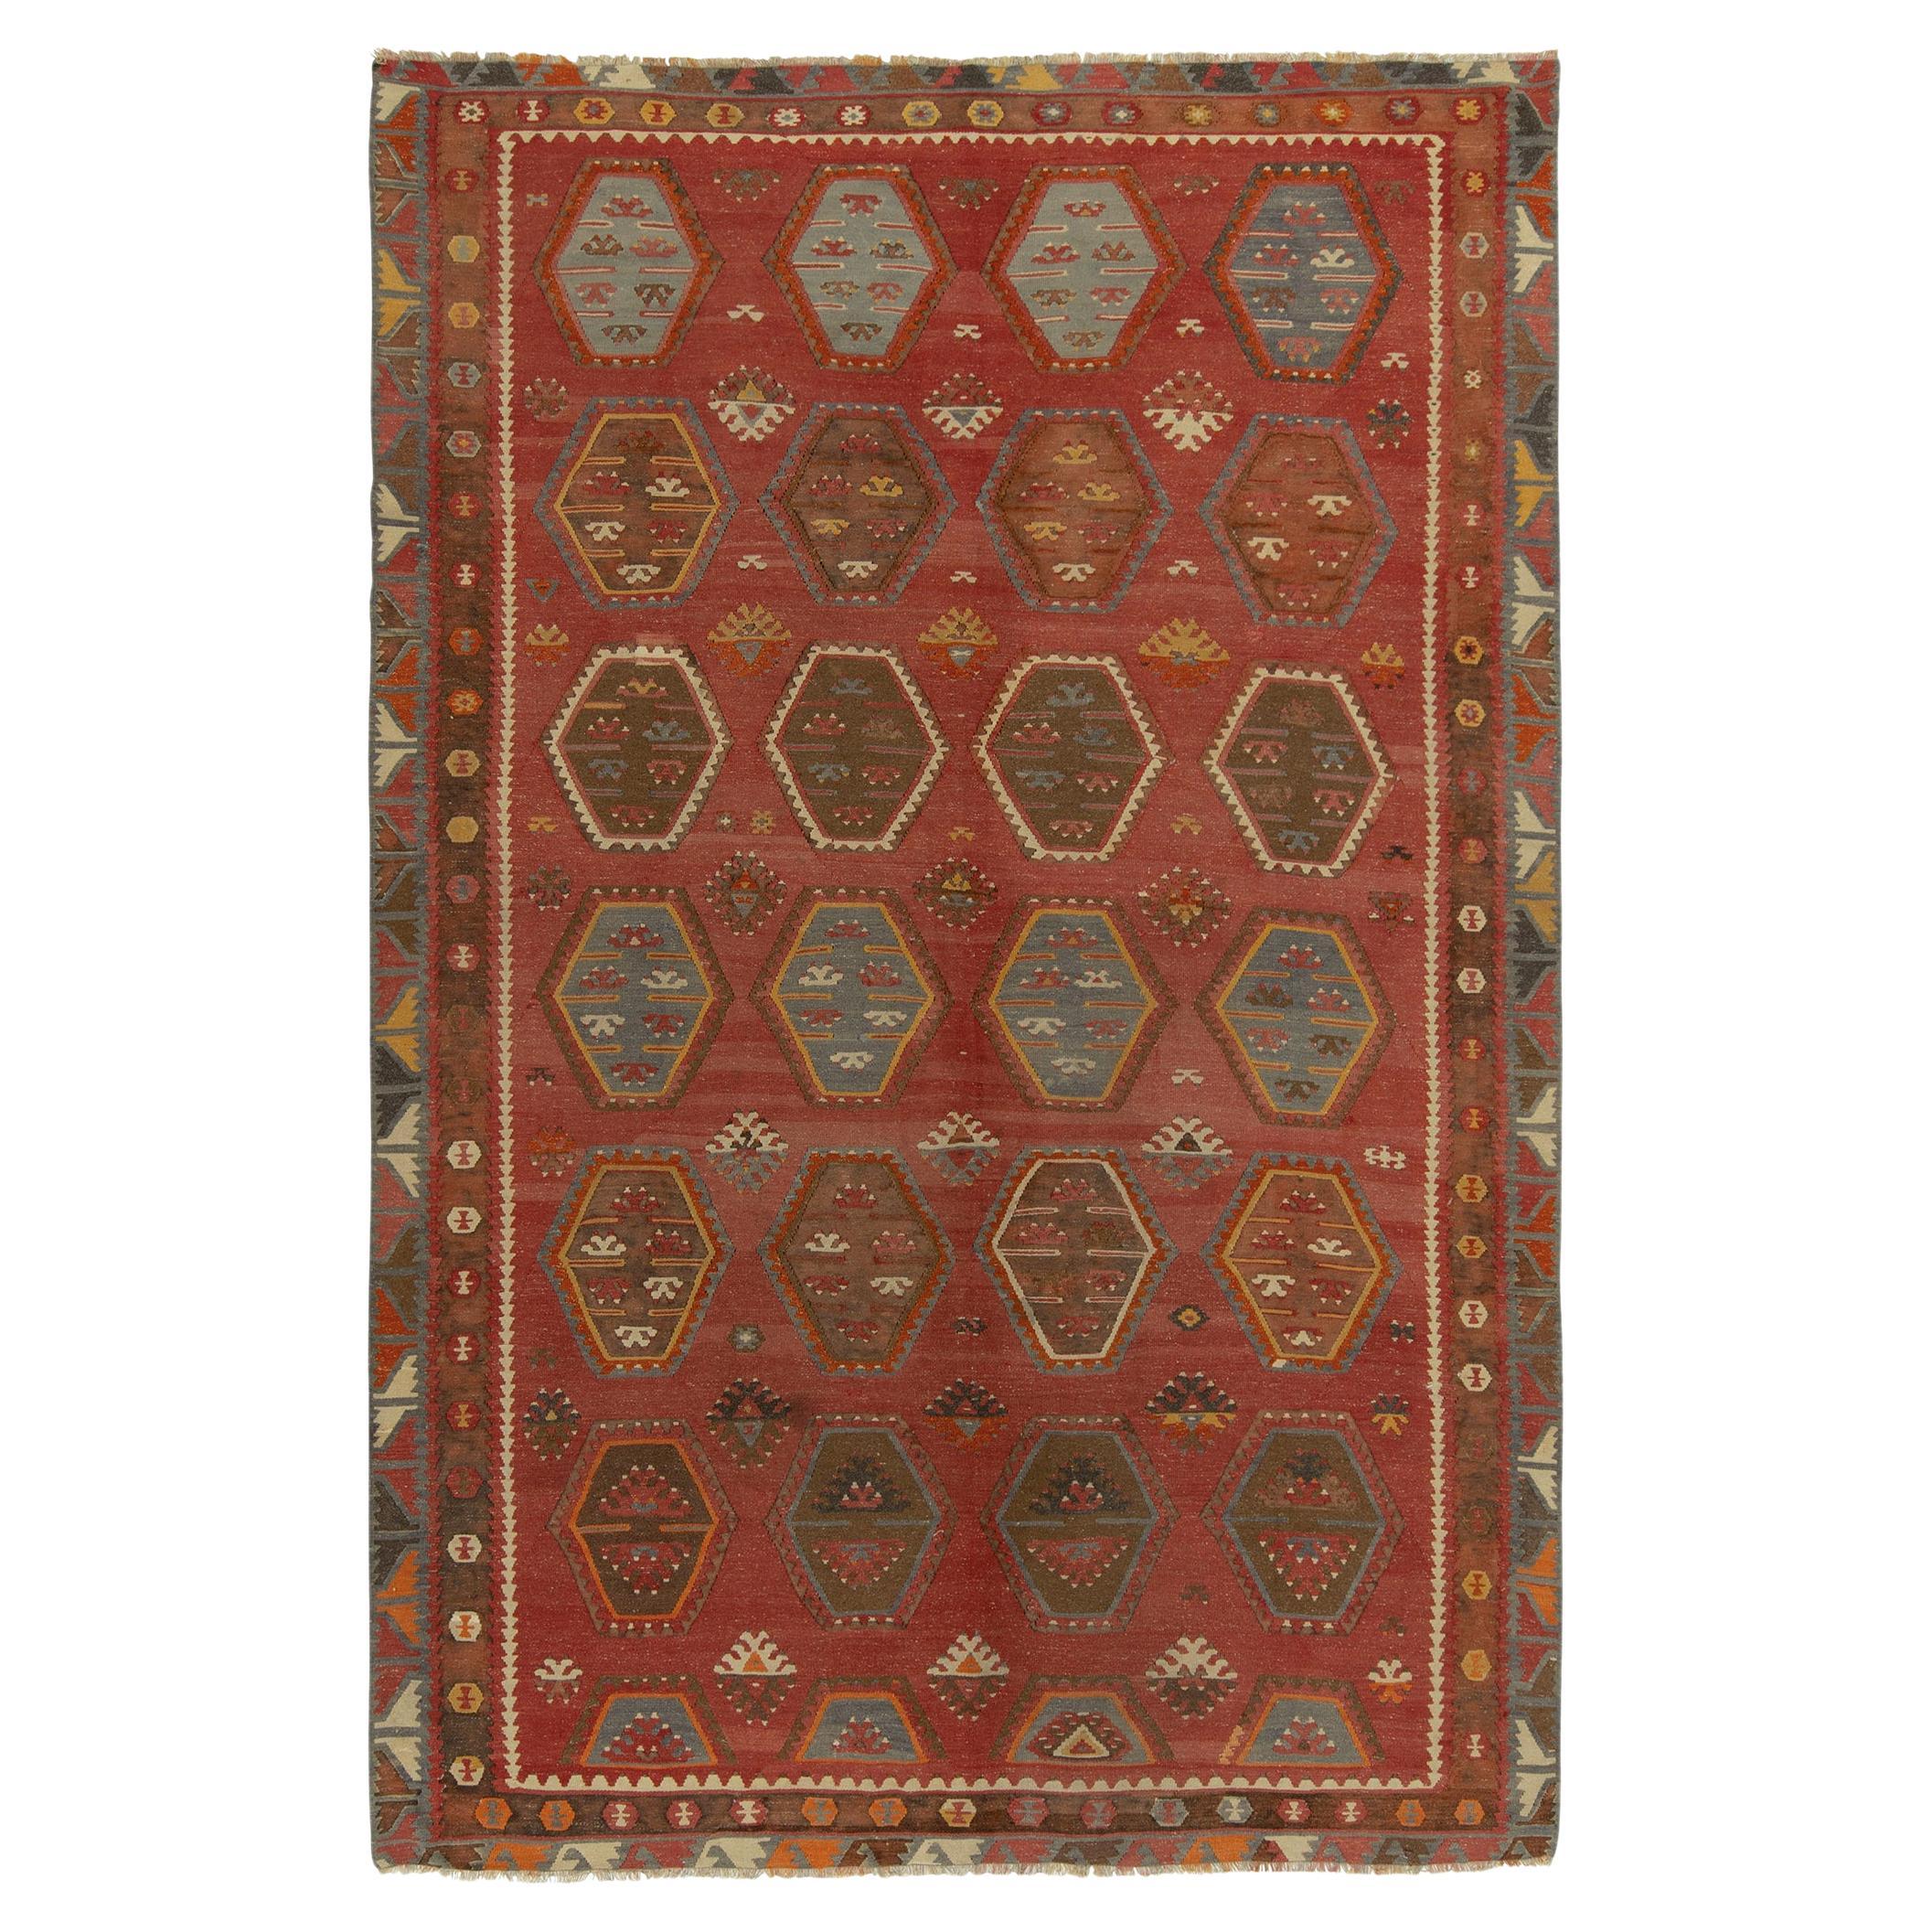 Vintage Turkish Kilim rug in Red & Brown Tribal Geometric Pattern by Rug & Kilim